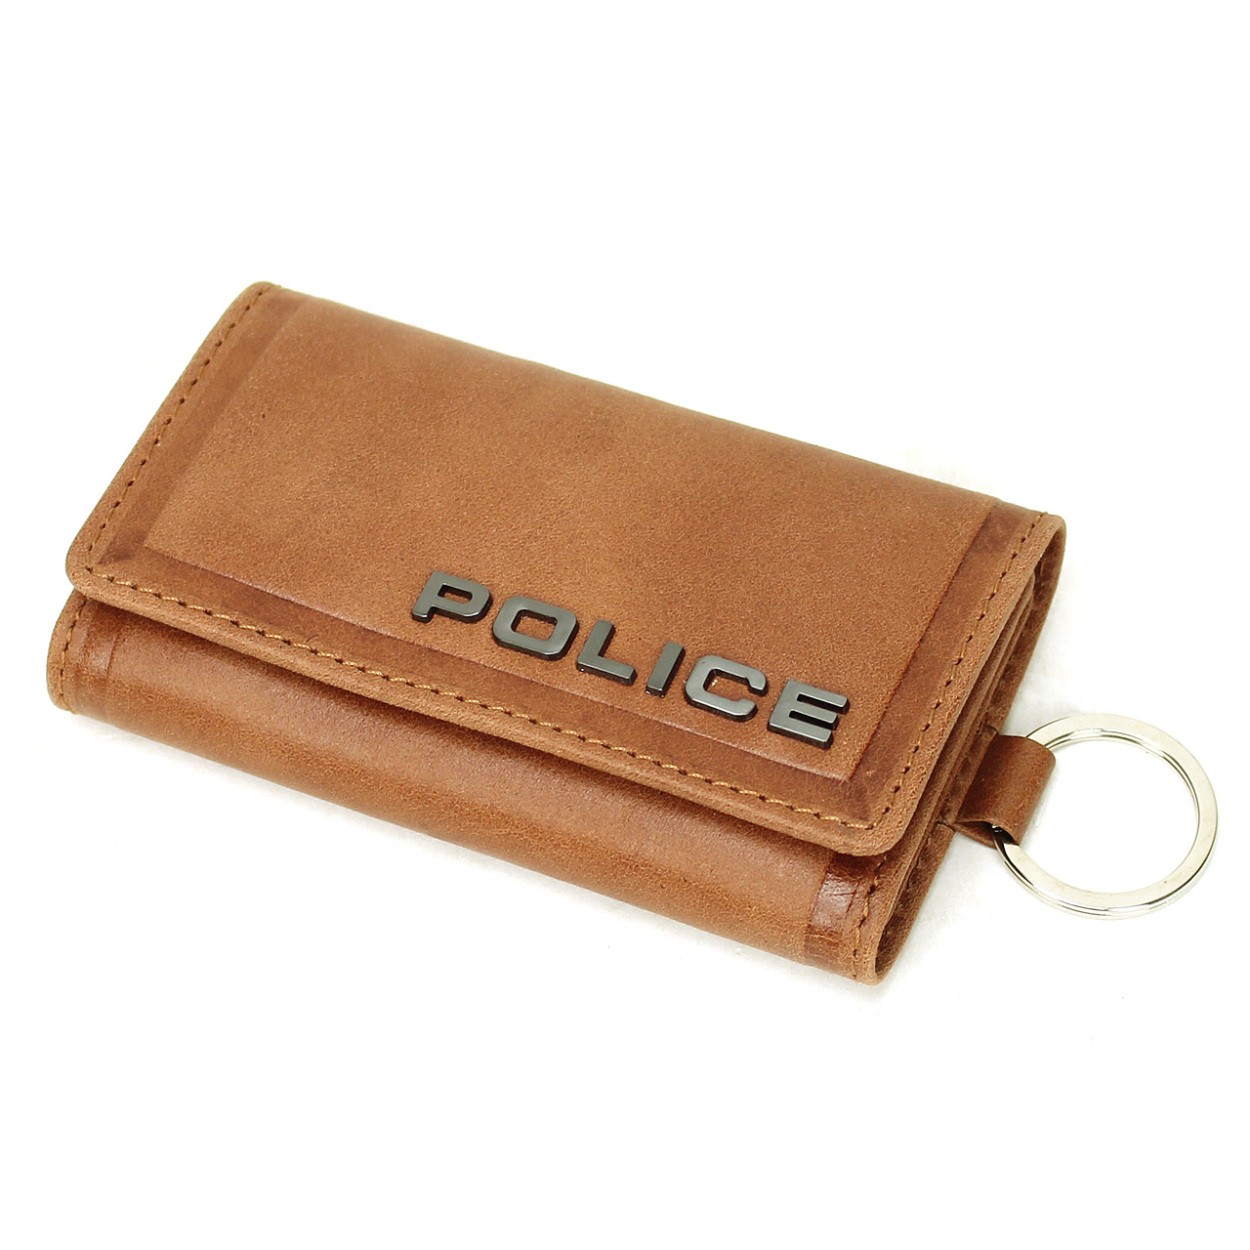 POLICE ポリス EDGE エッジ キーケース 6連 キーリング付き レザー 革